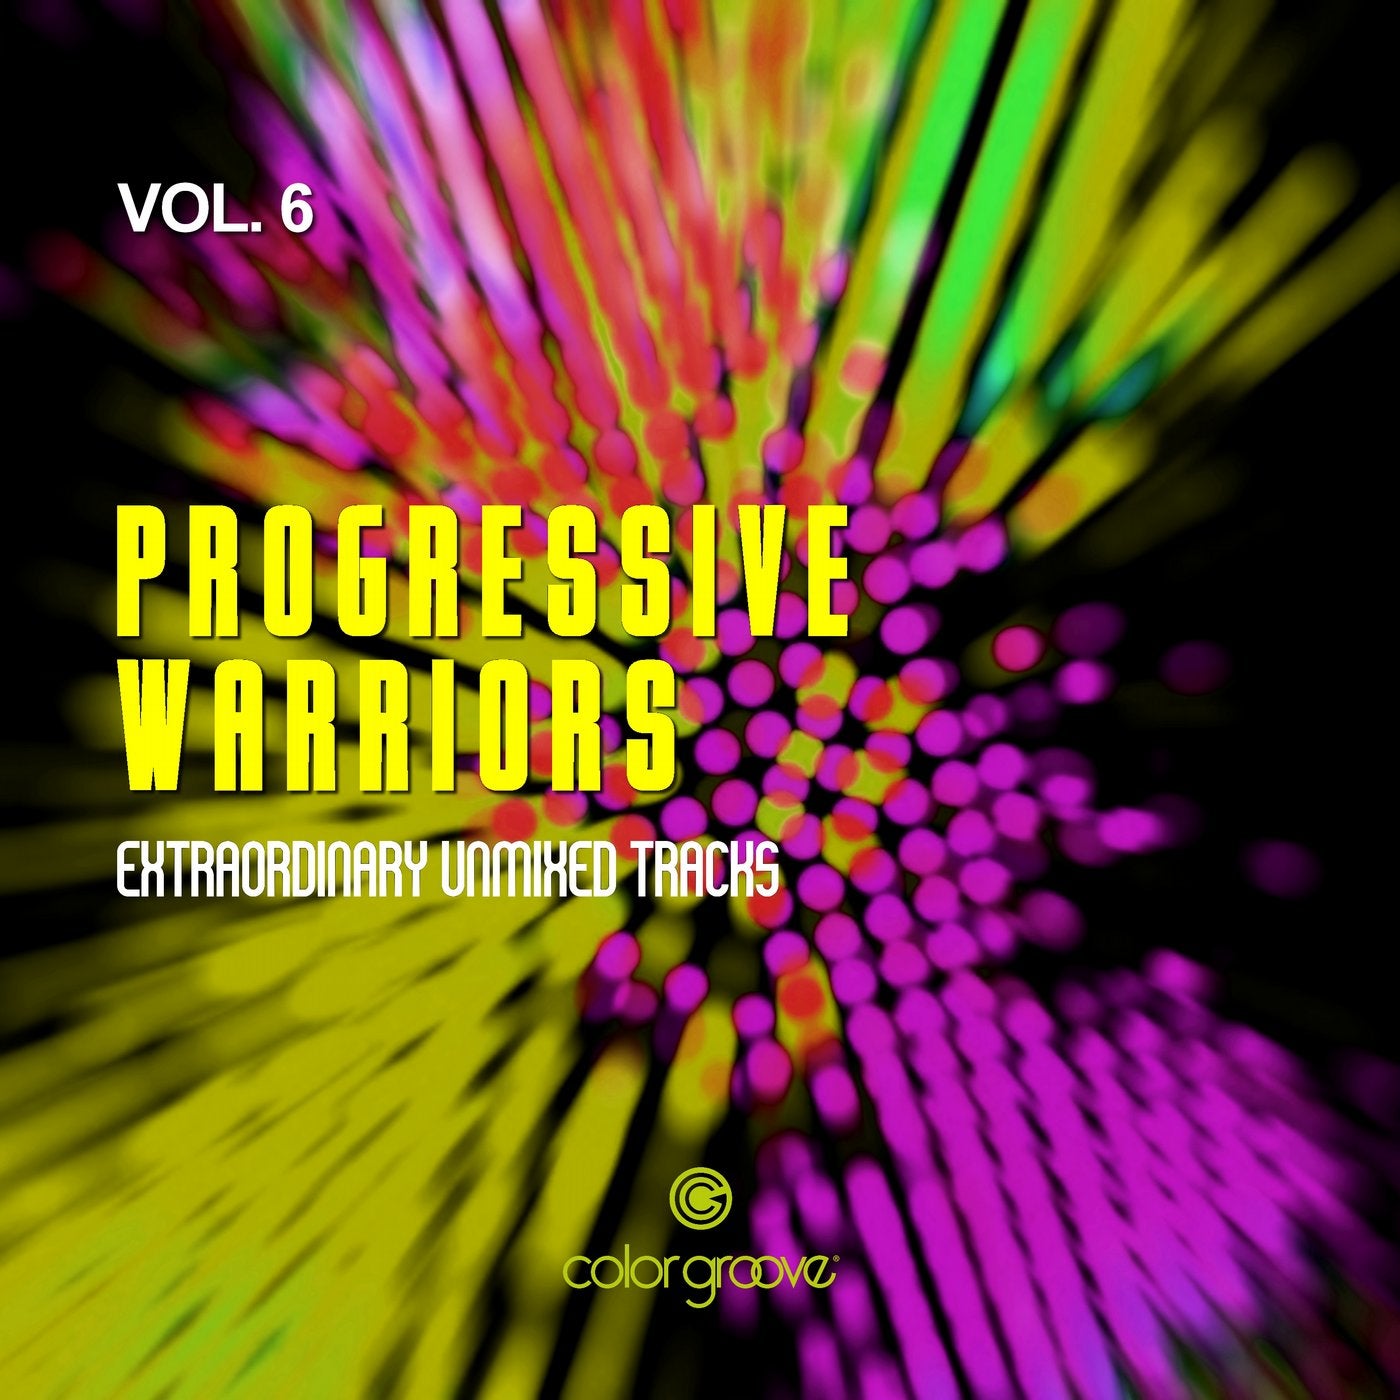 Progressive Warriors, Vol. 6 (Extraordinary Unmixed Tracks)